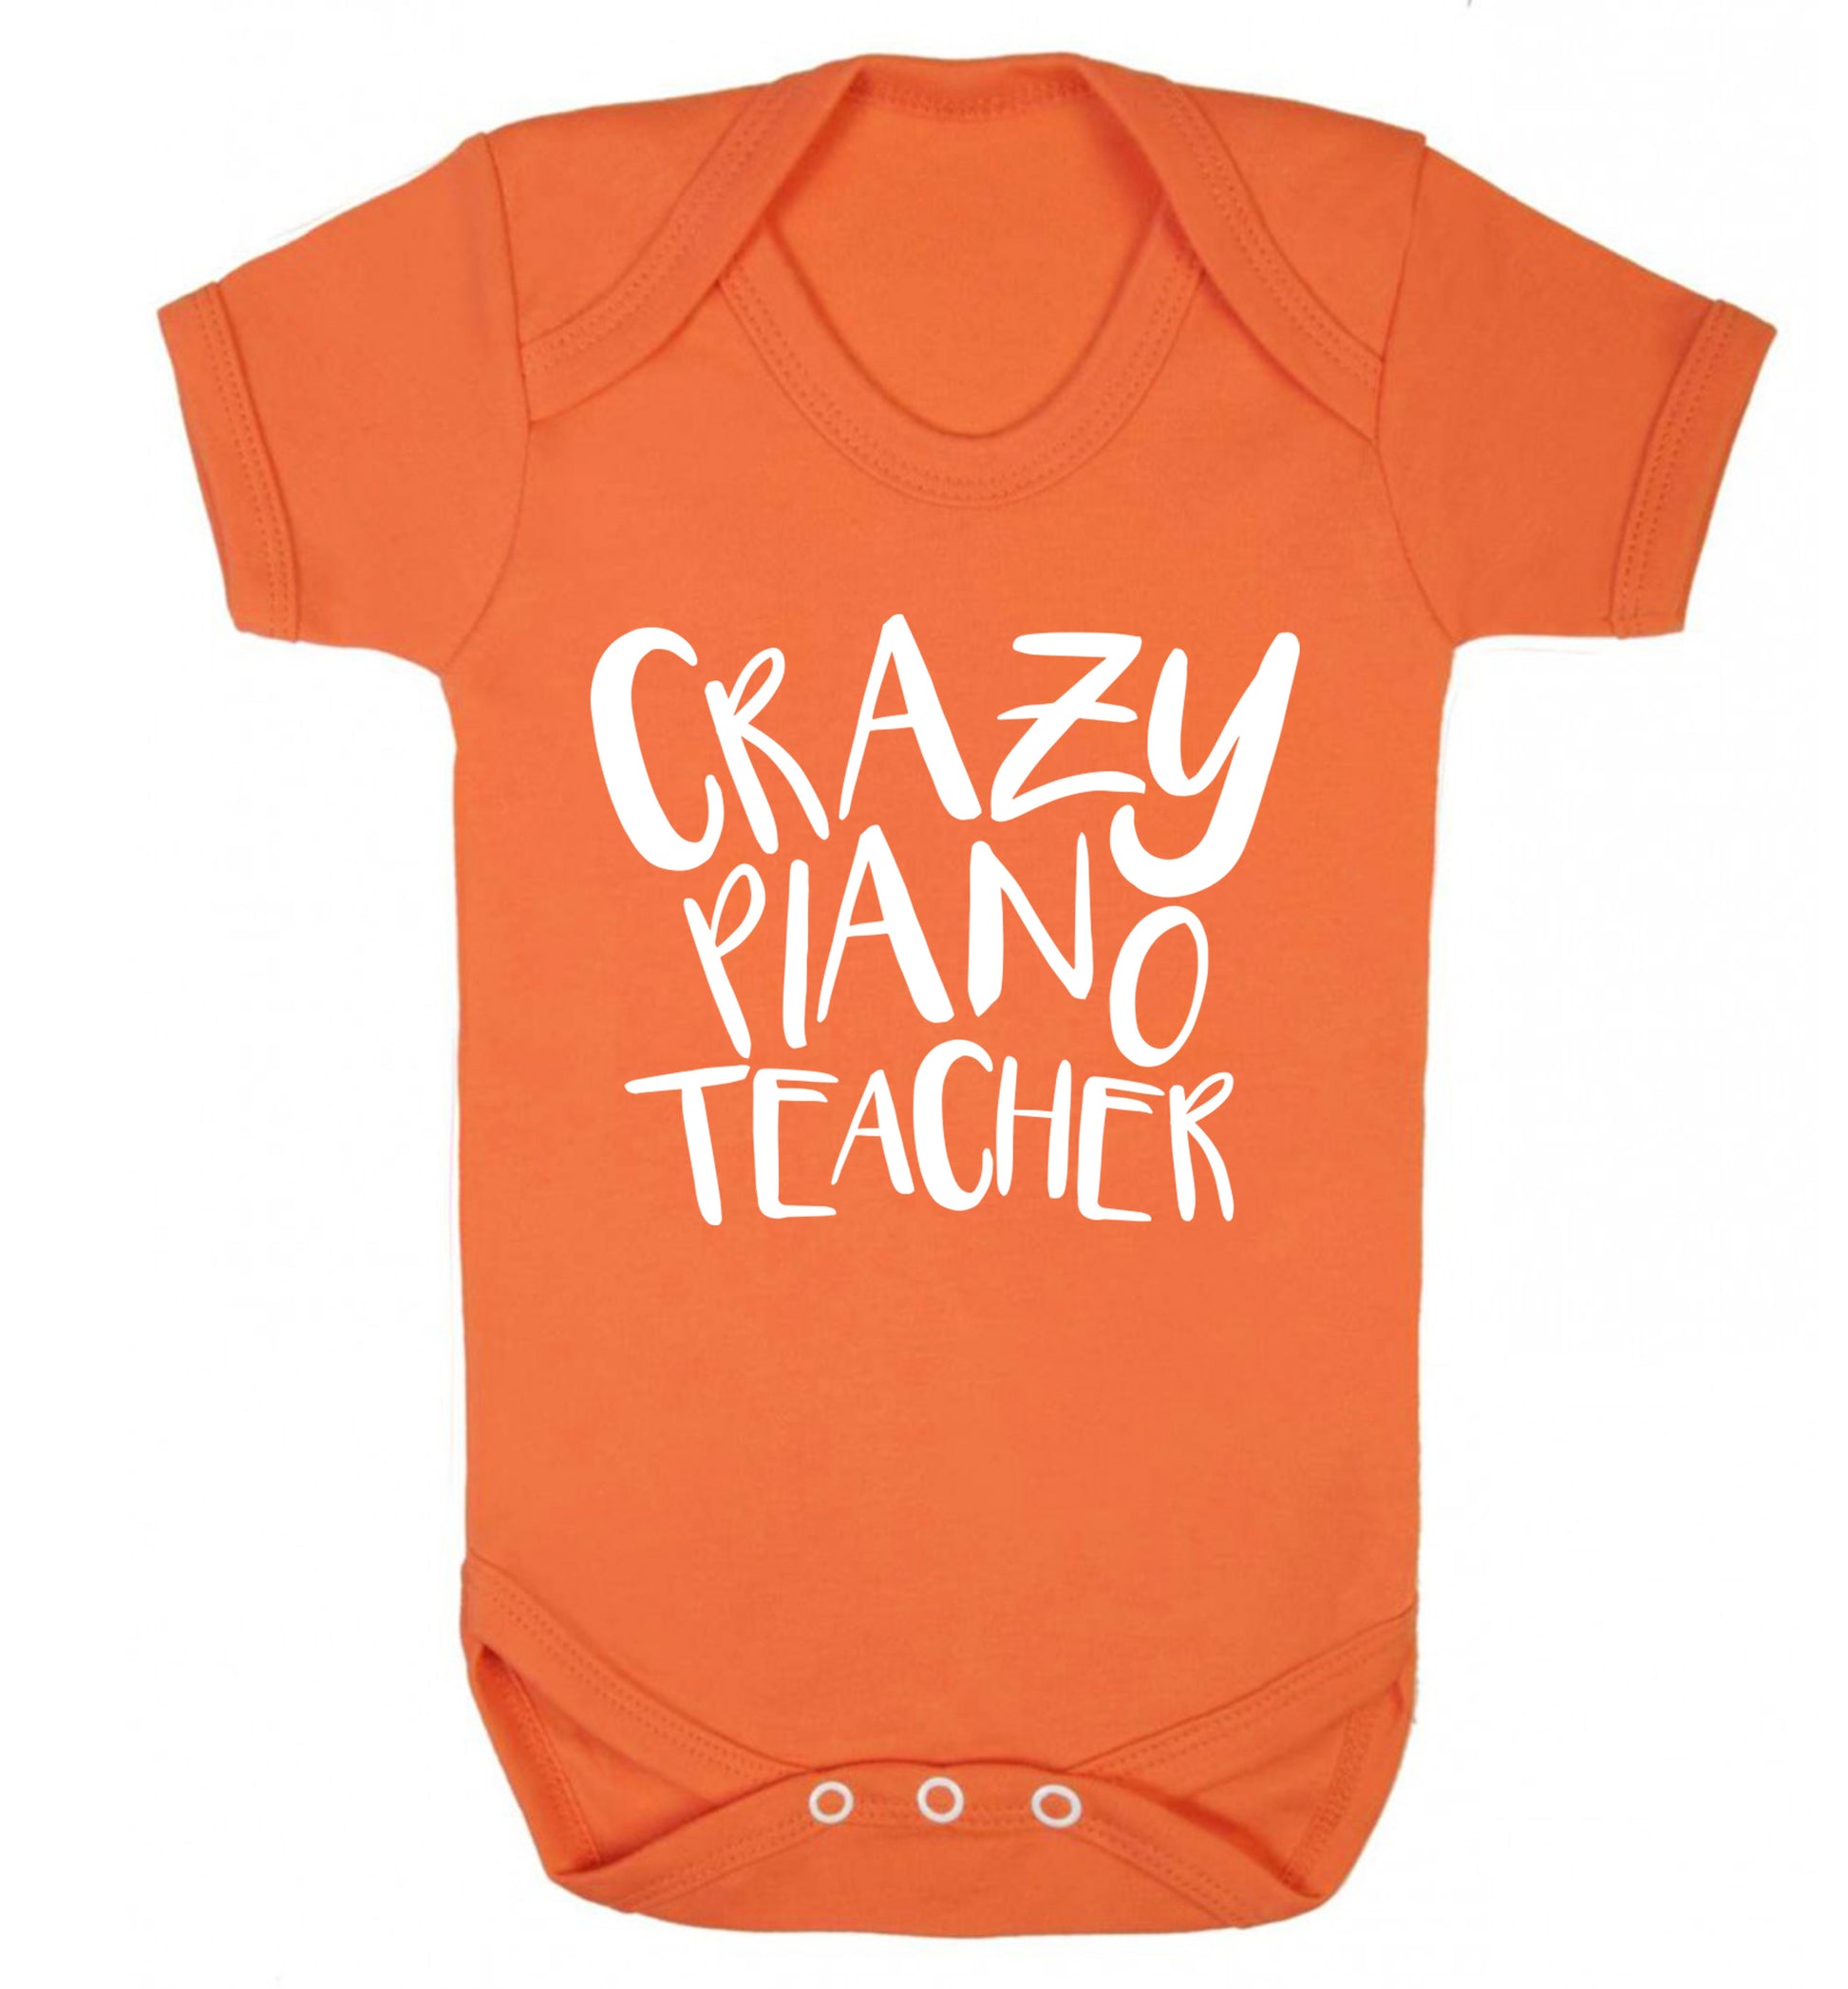 Crazy piano teacher Baby Vest orange 18-24 months